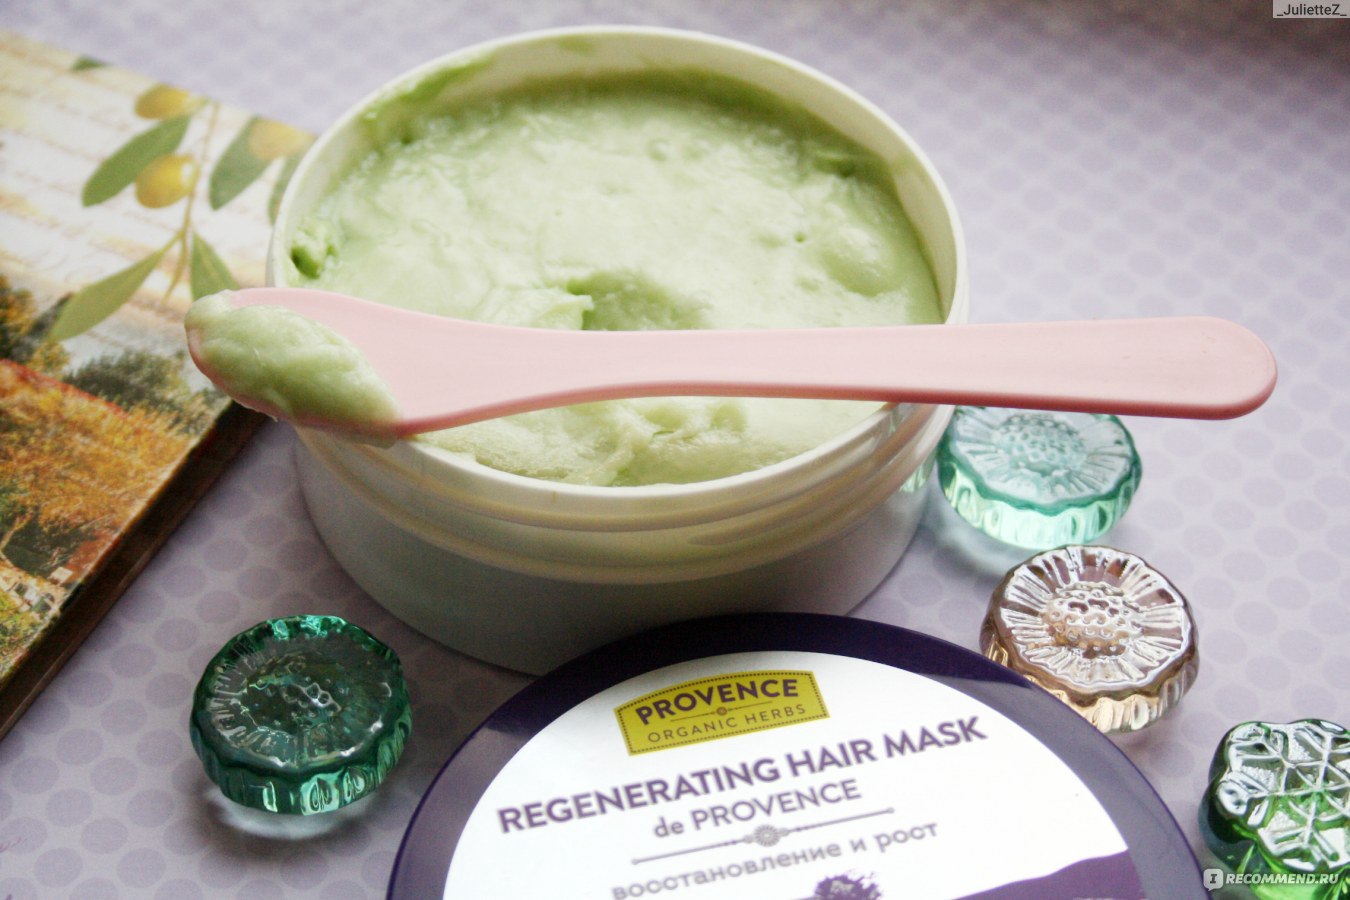 Provence organic herbs маска для волос регенерирующая восстановление и рост